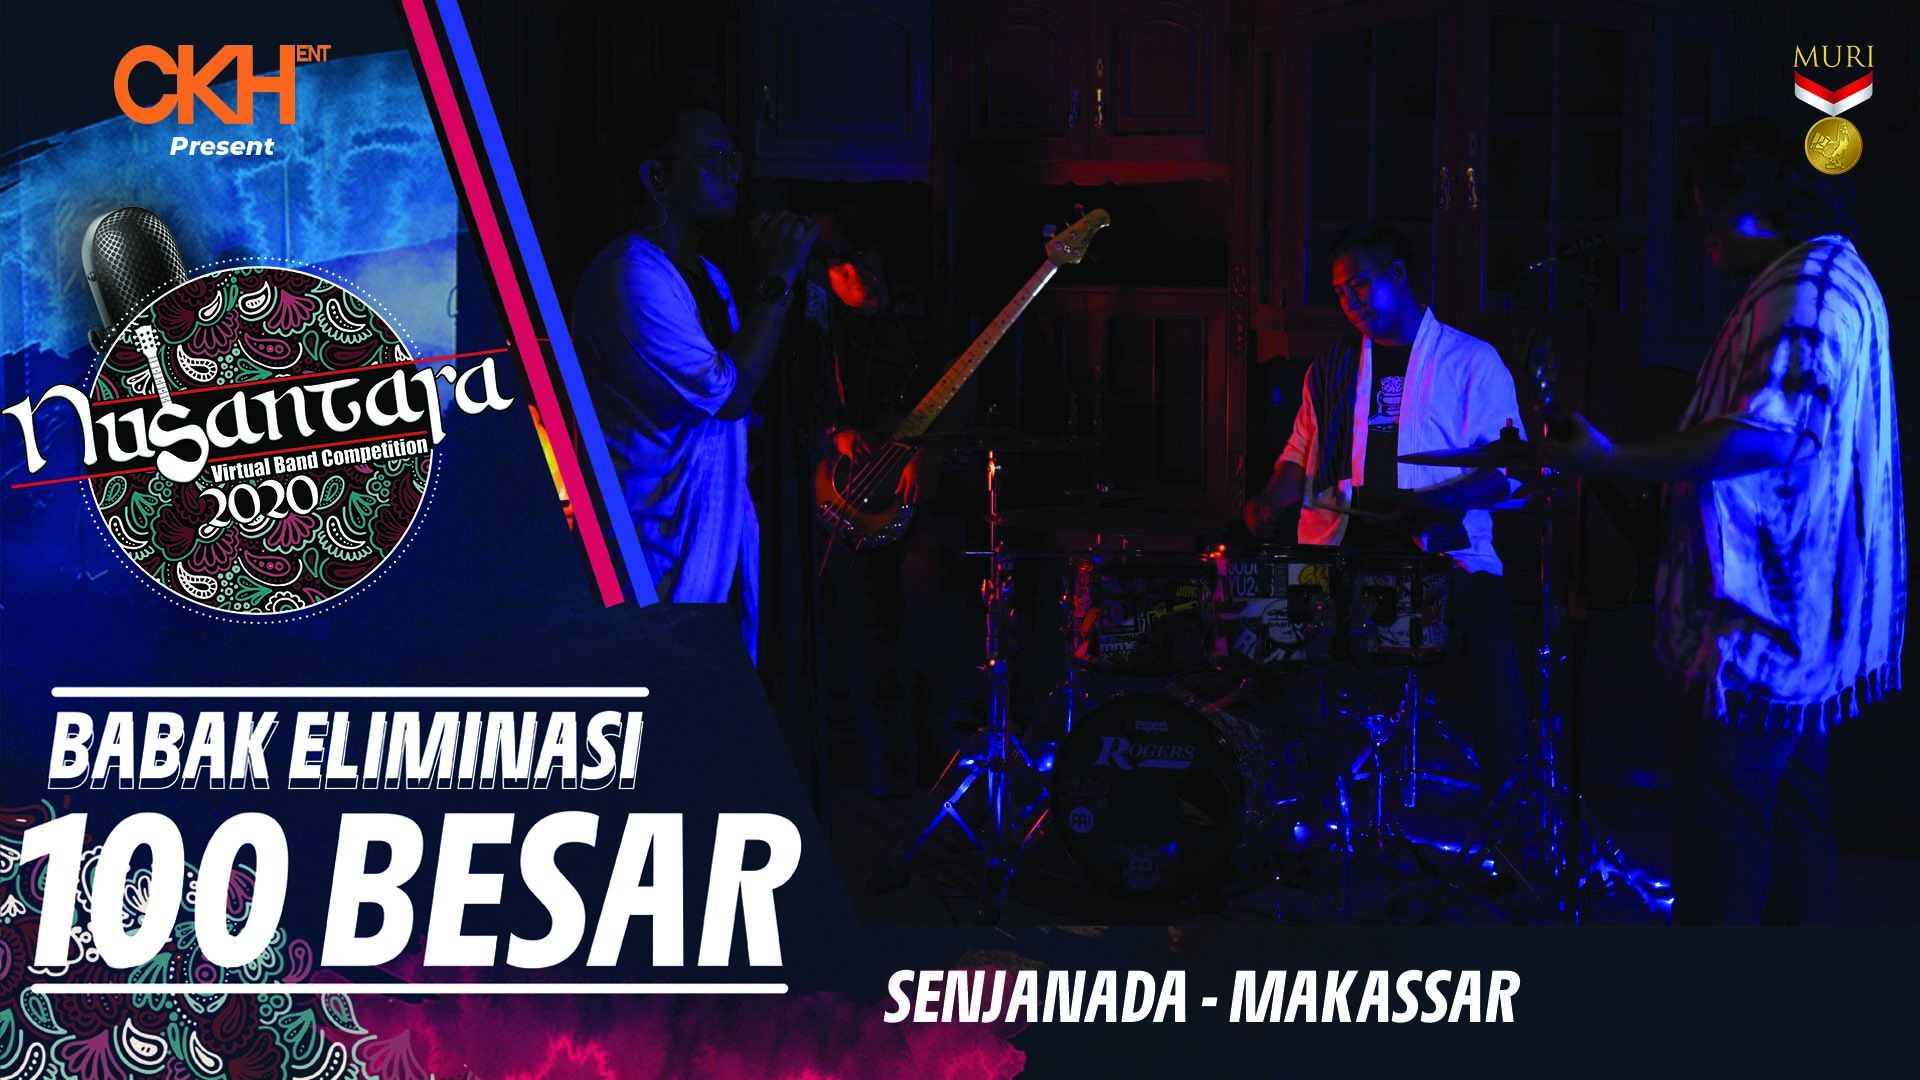 Senjanada - Eliminasi 100 Besar Nusantara Virtual Band Competition